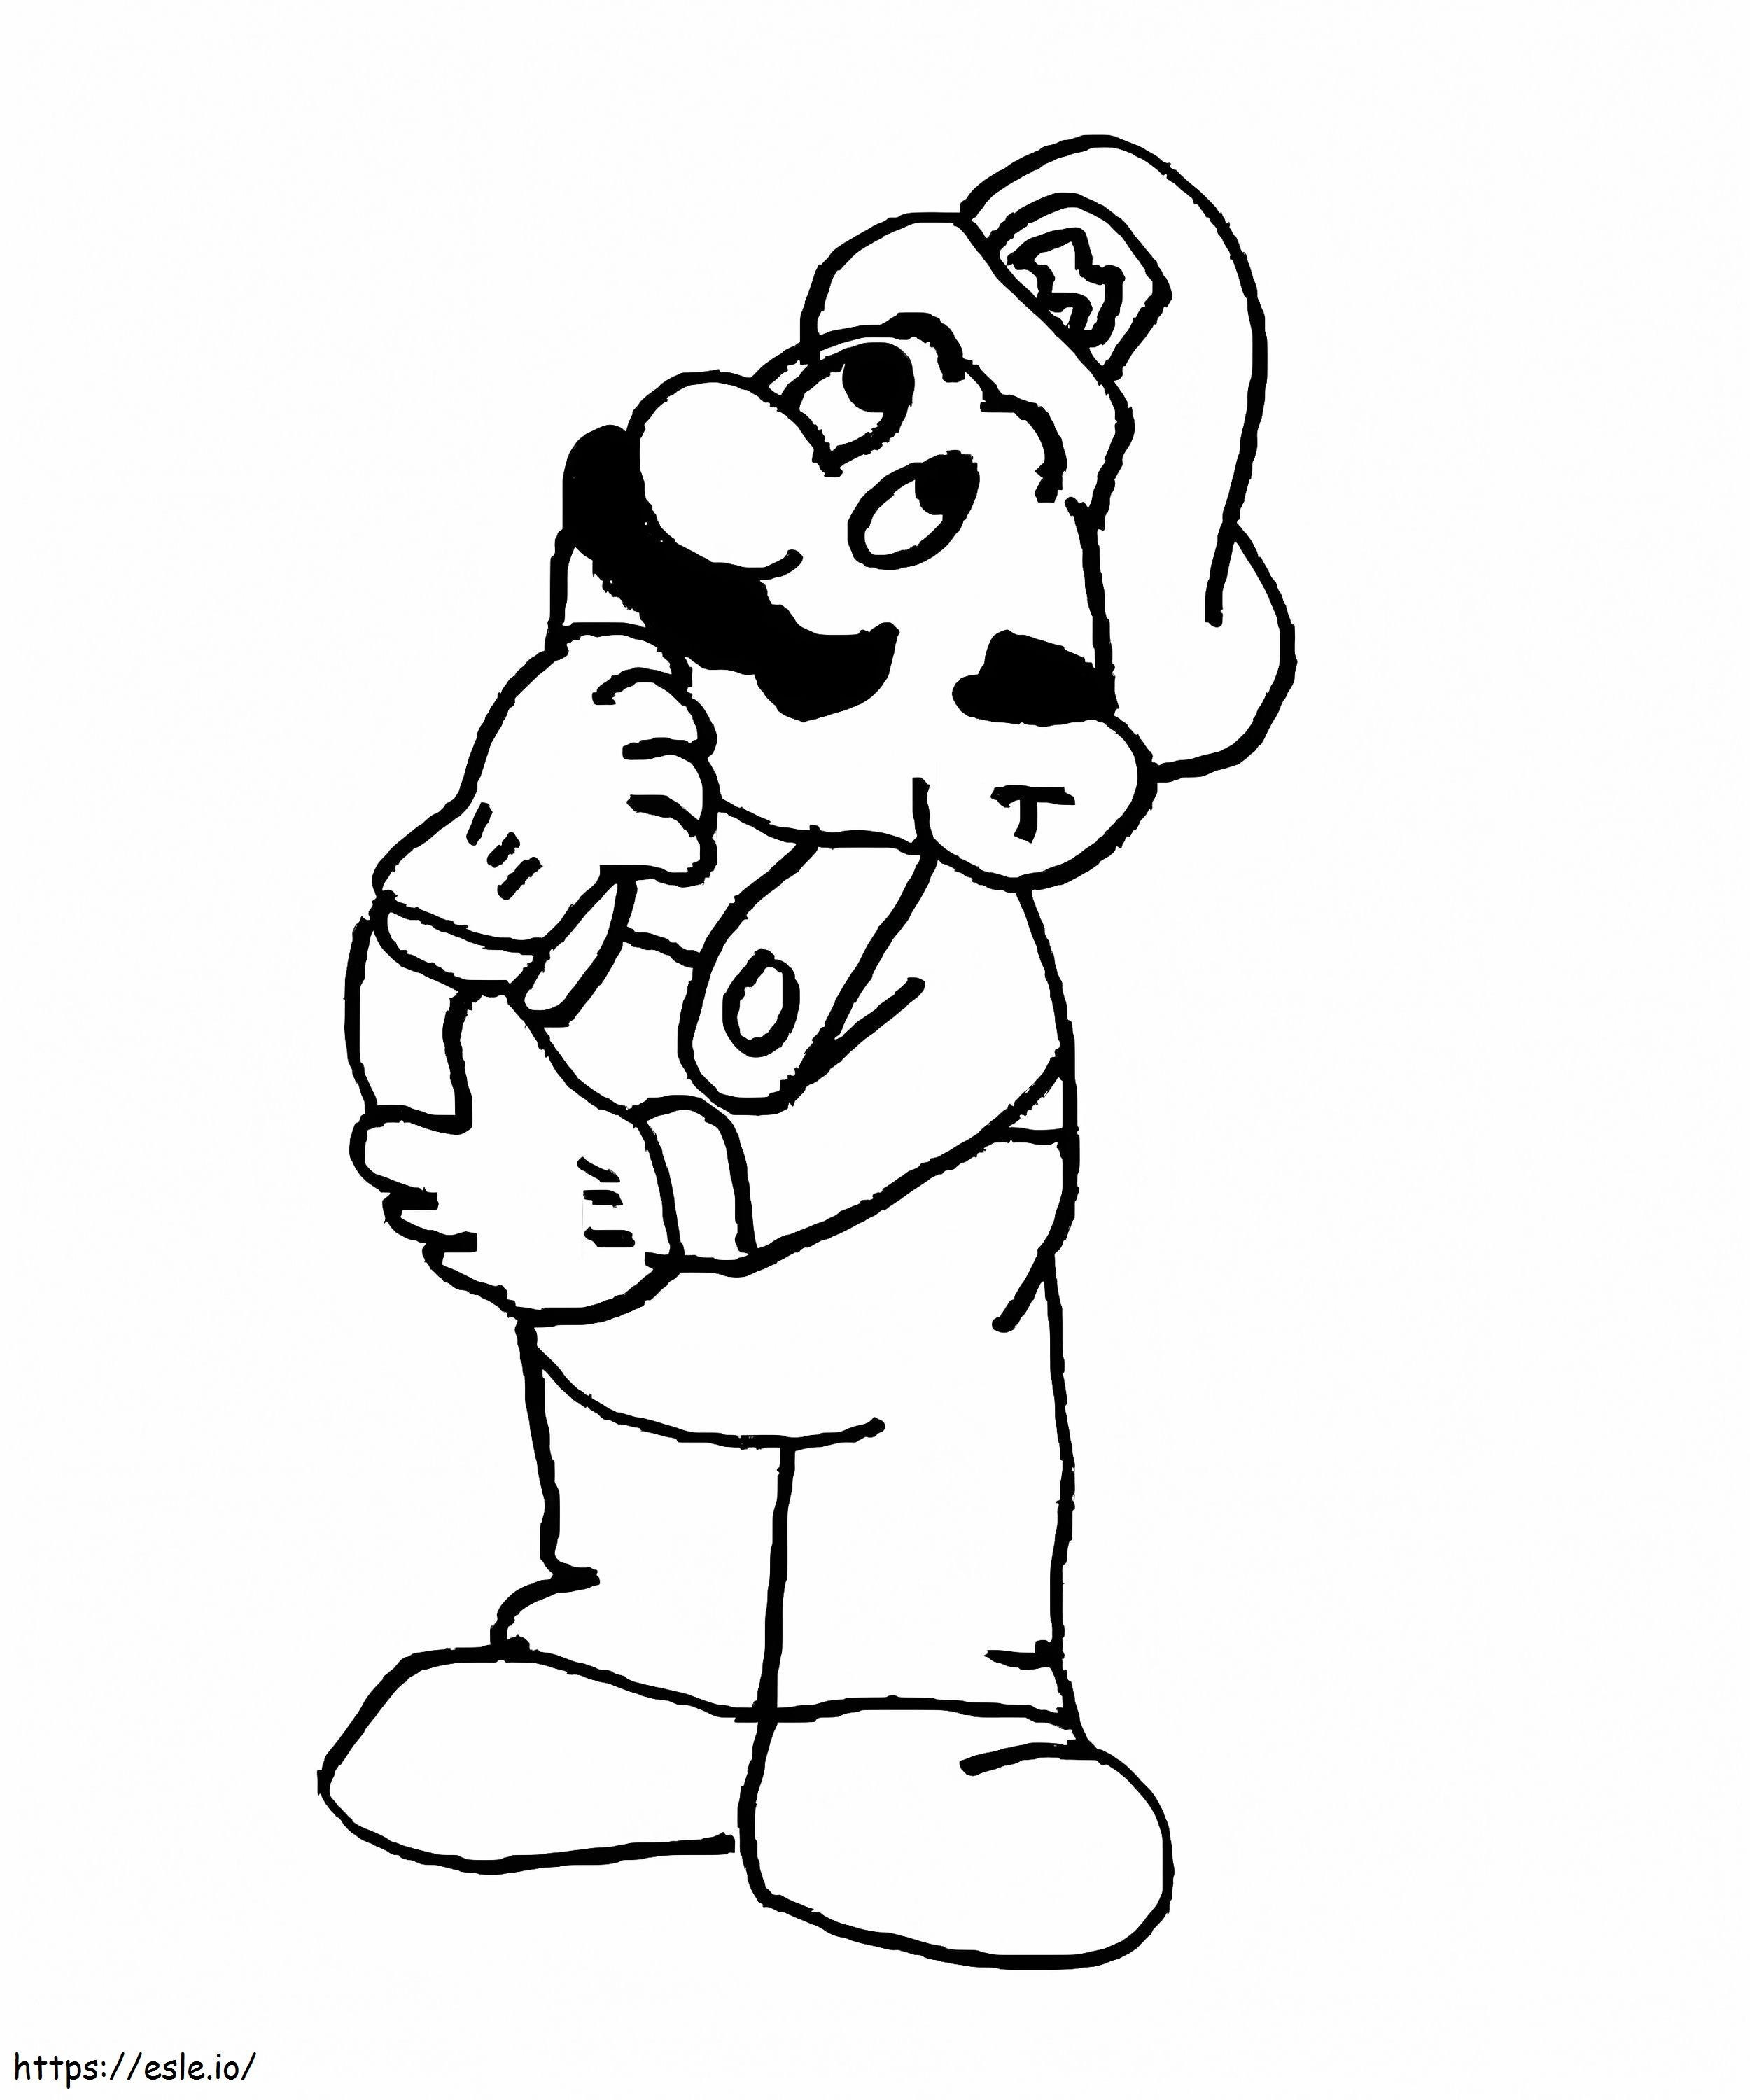 Mario Denken ausmalbilder